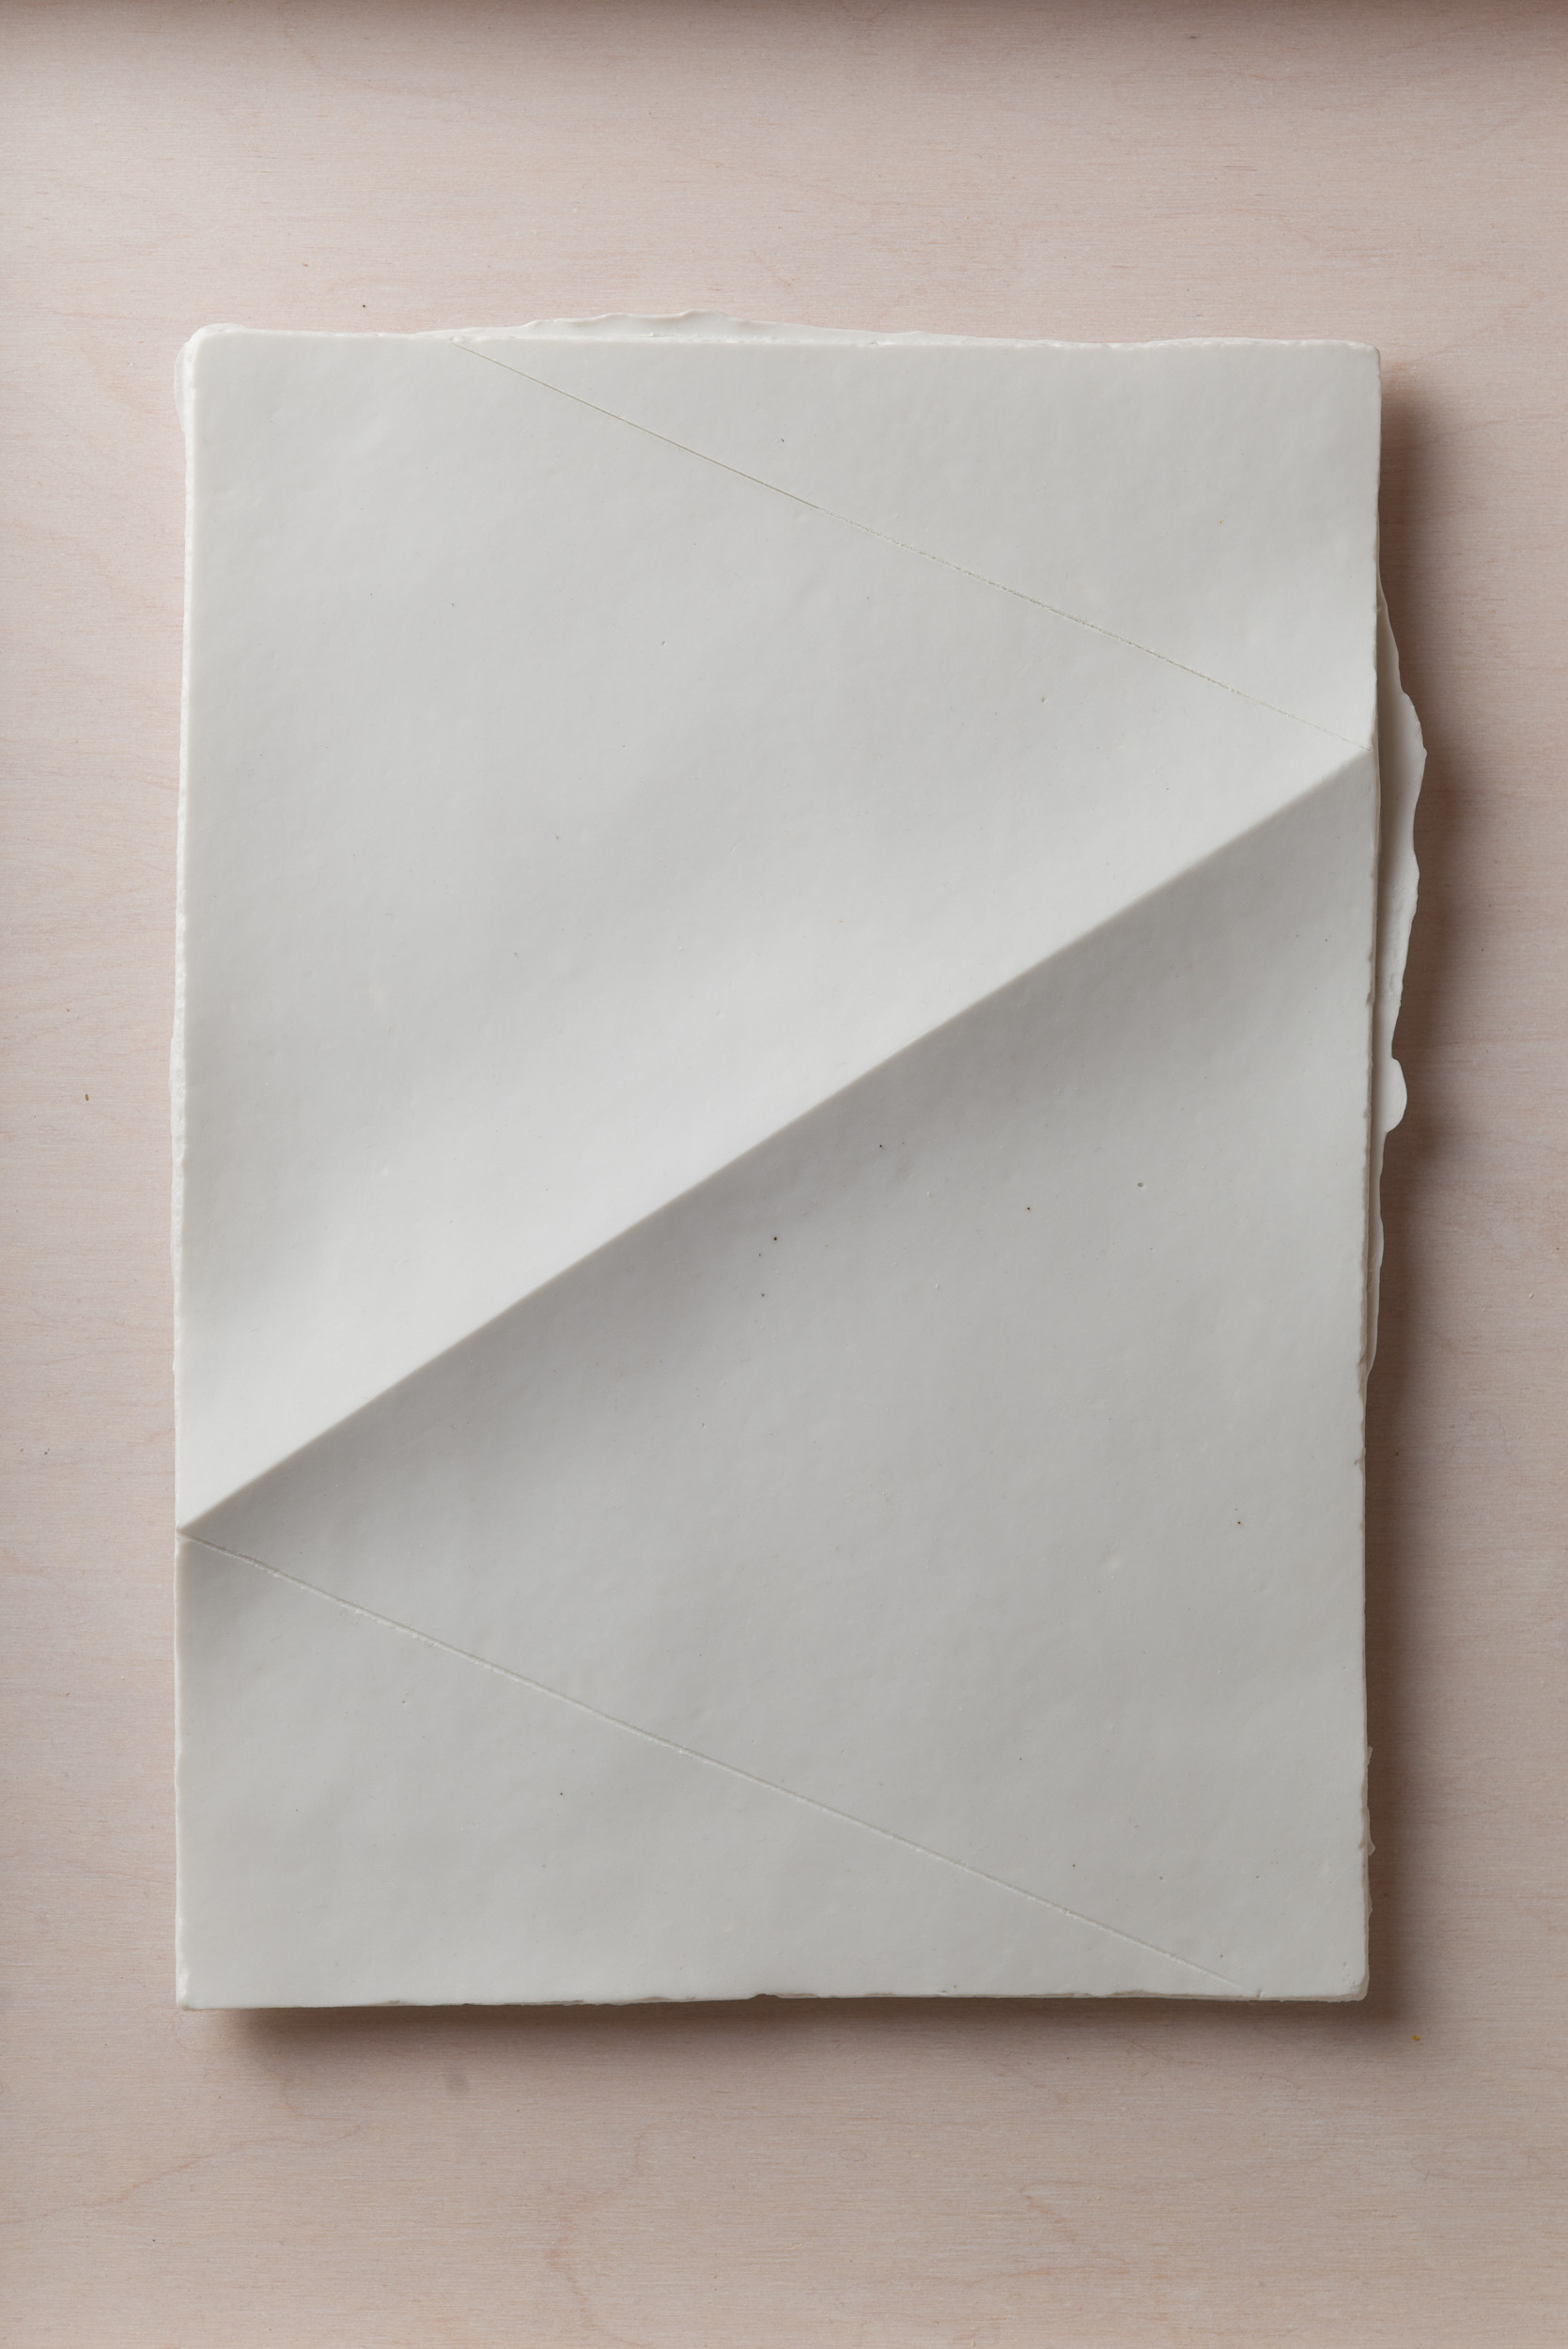 NÉMA Júlia: A4 I/I (2019) papírporcelán / paperporcelain 18 x 26 cm (31,6 x 38,6 x 3,5 cm) fotó: Czigány Ákos